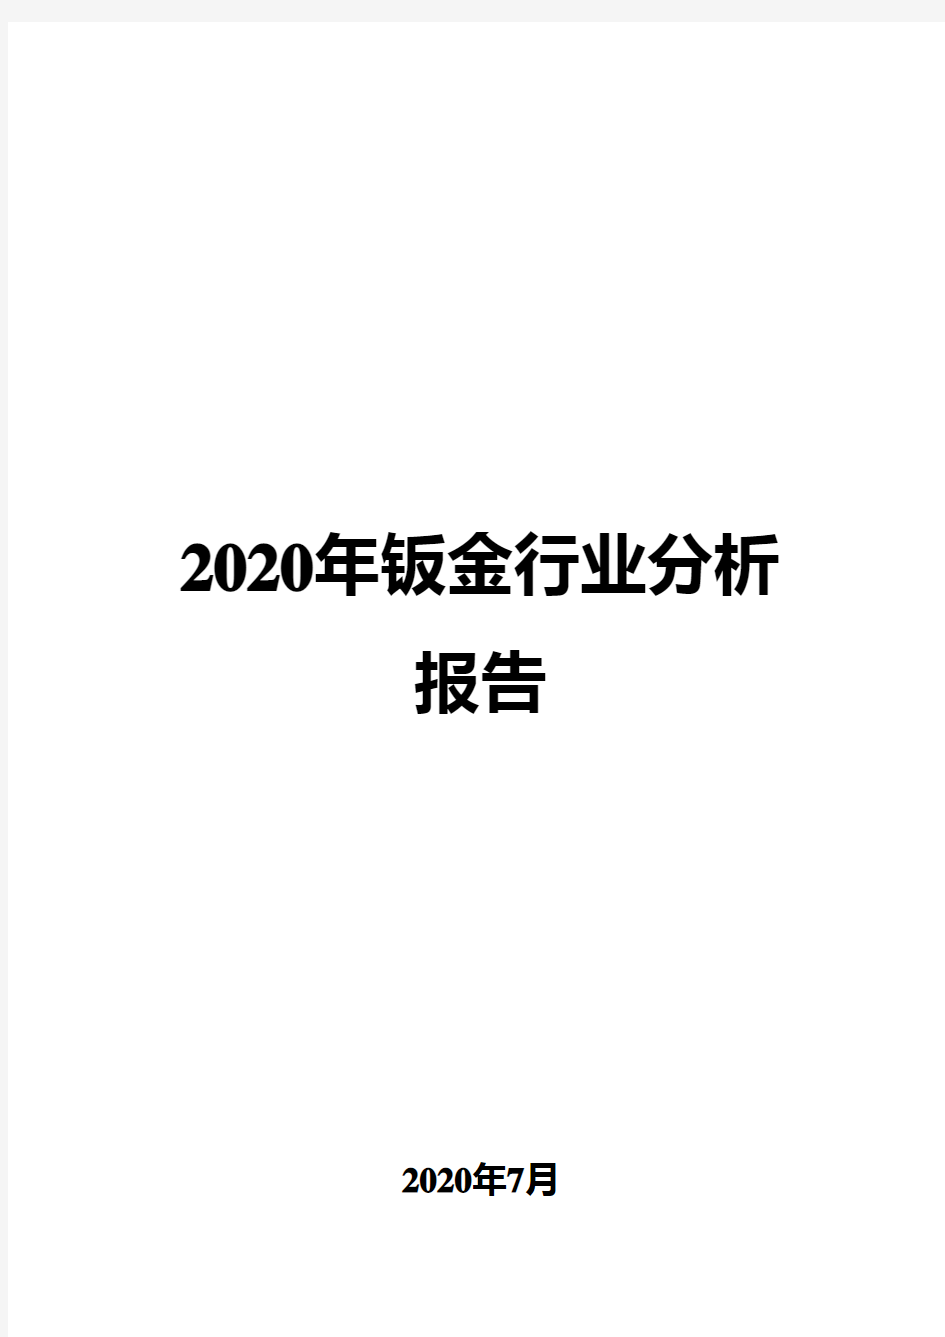 2020年钣金行业分析报告